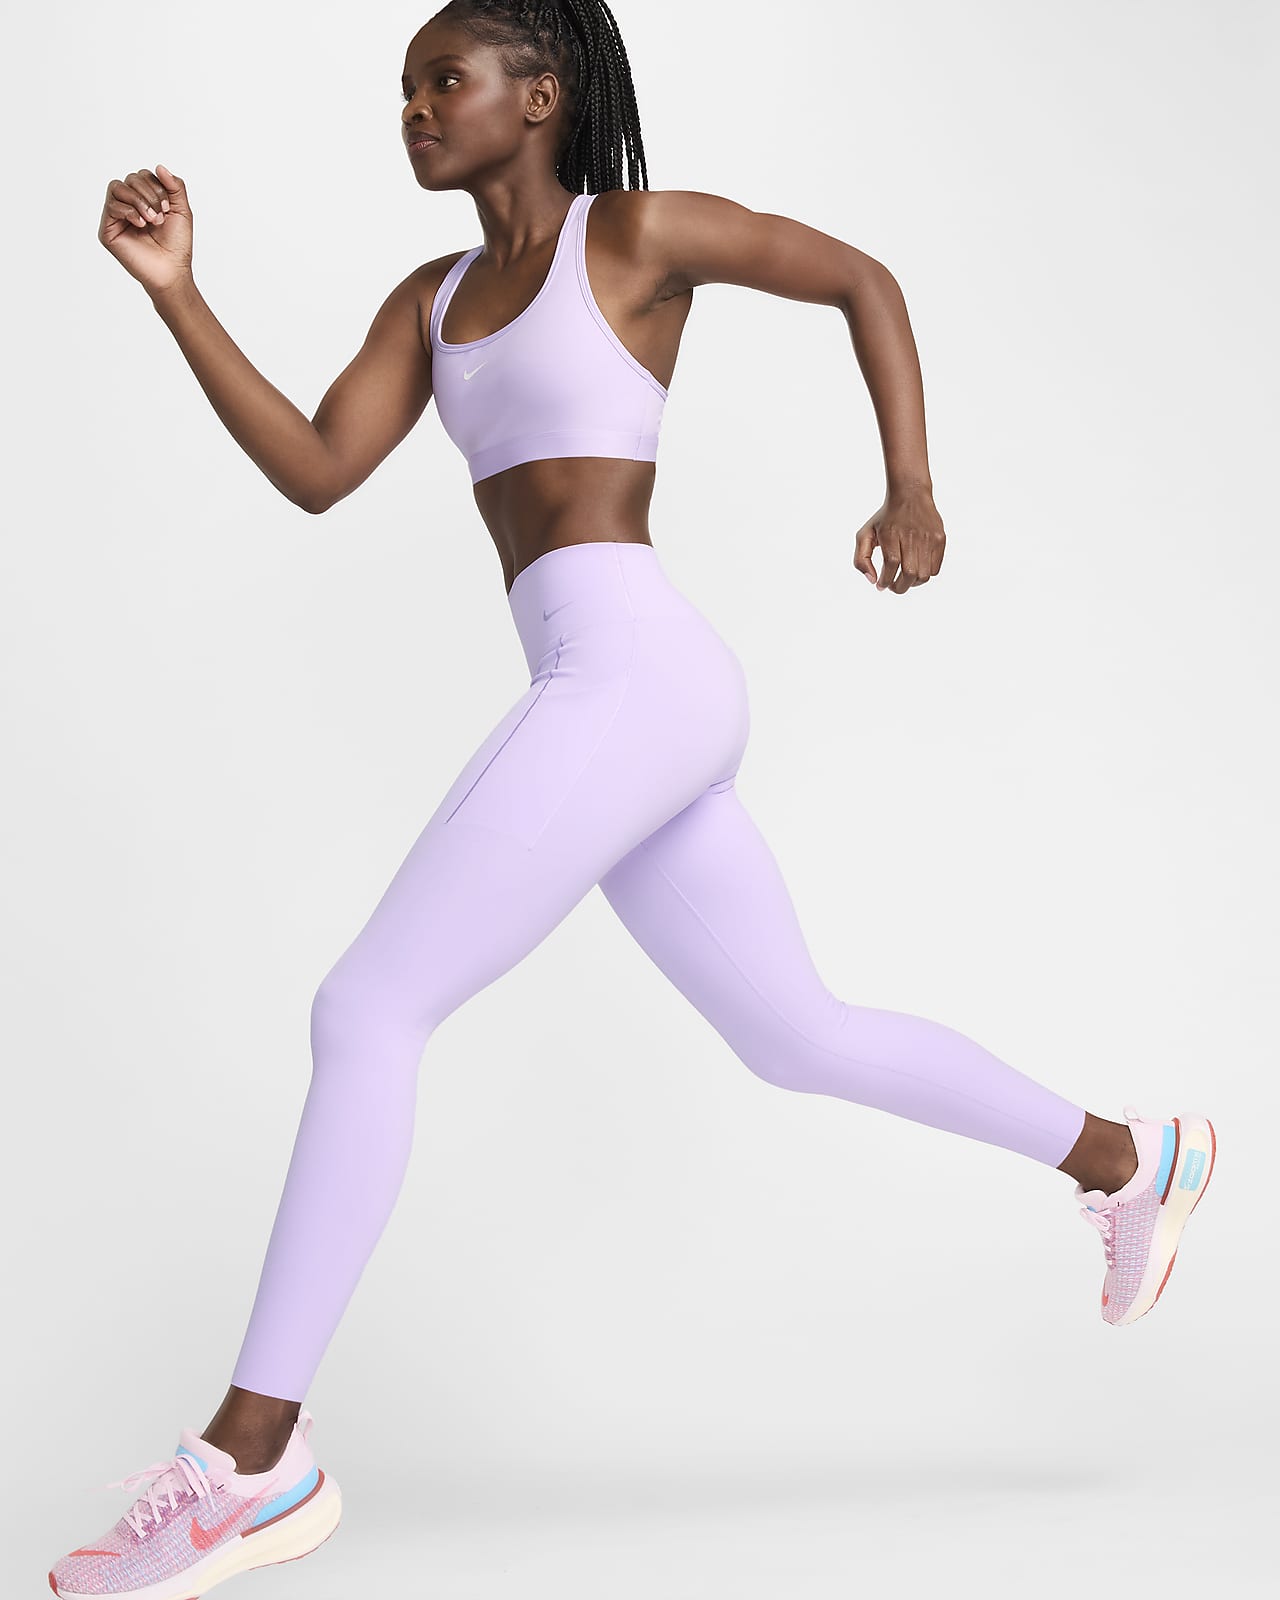 Dlouhé dámské legíny Nike Universa se středně vysokým pasem, střední oporou a kapsami